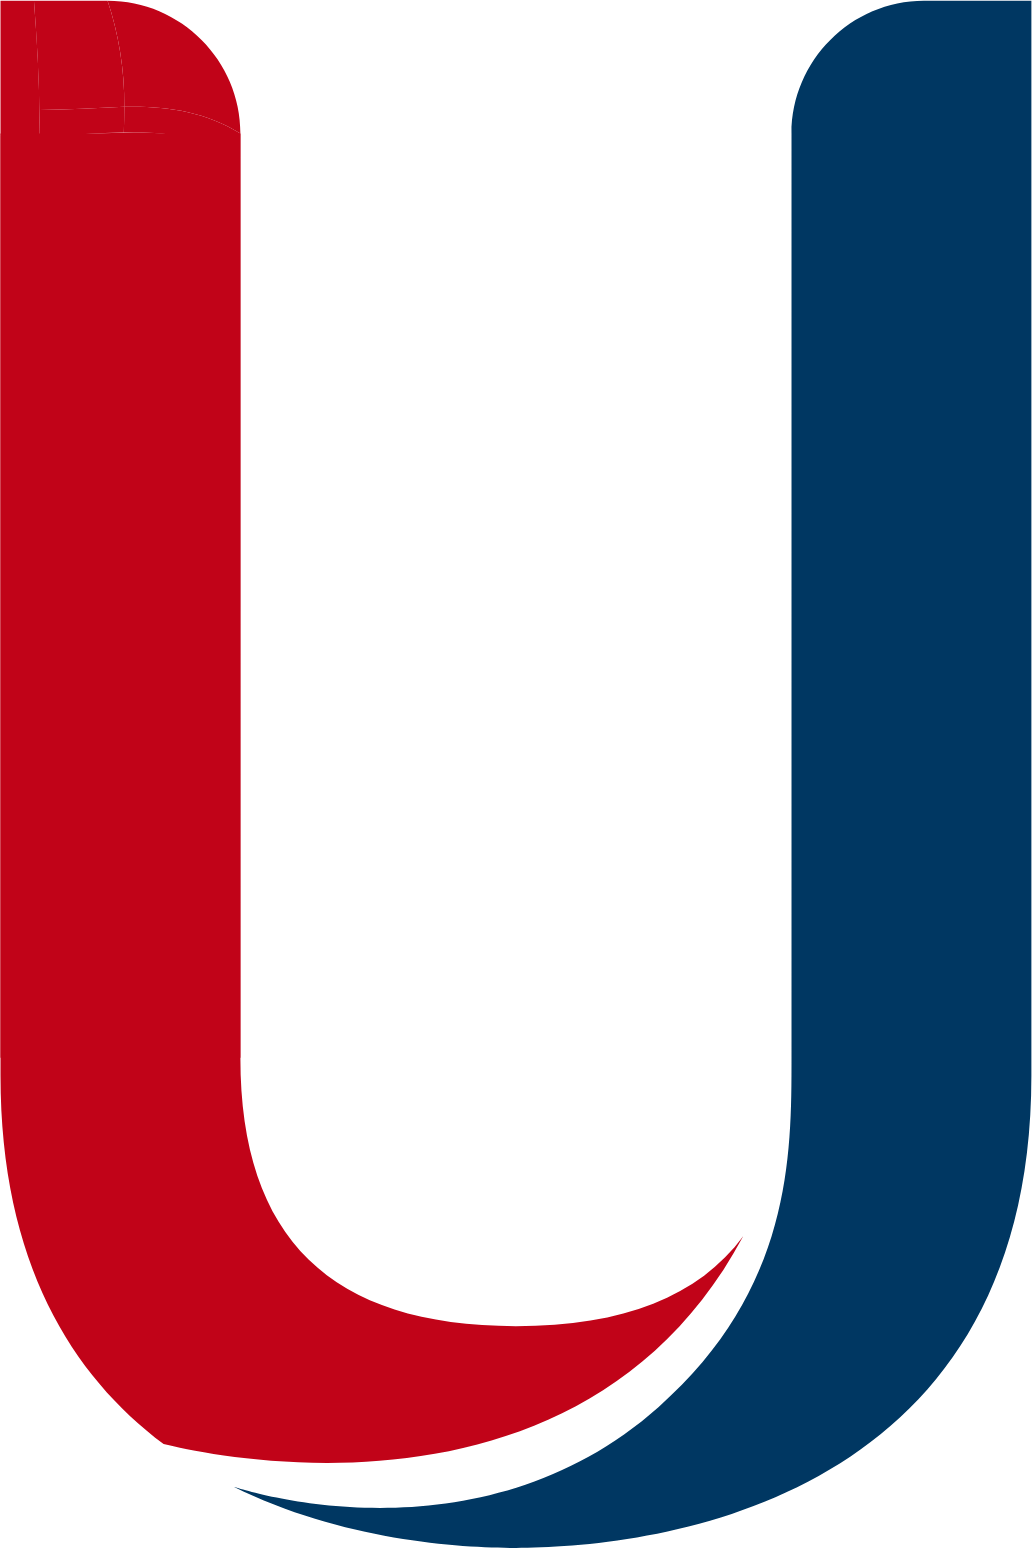 UnipolSai Assicurazioni logo (transparent PNG)